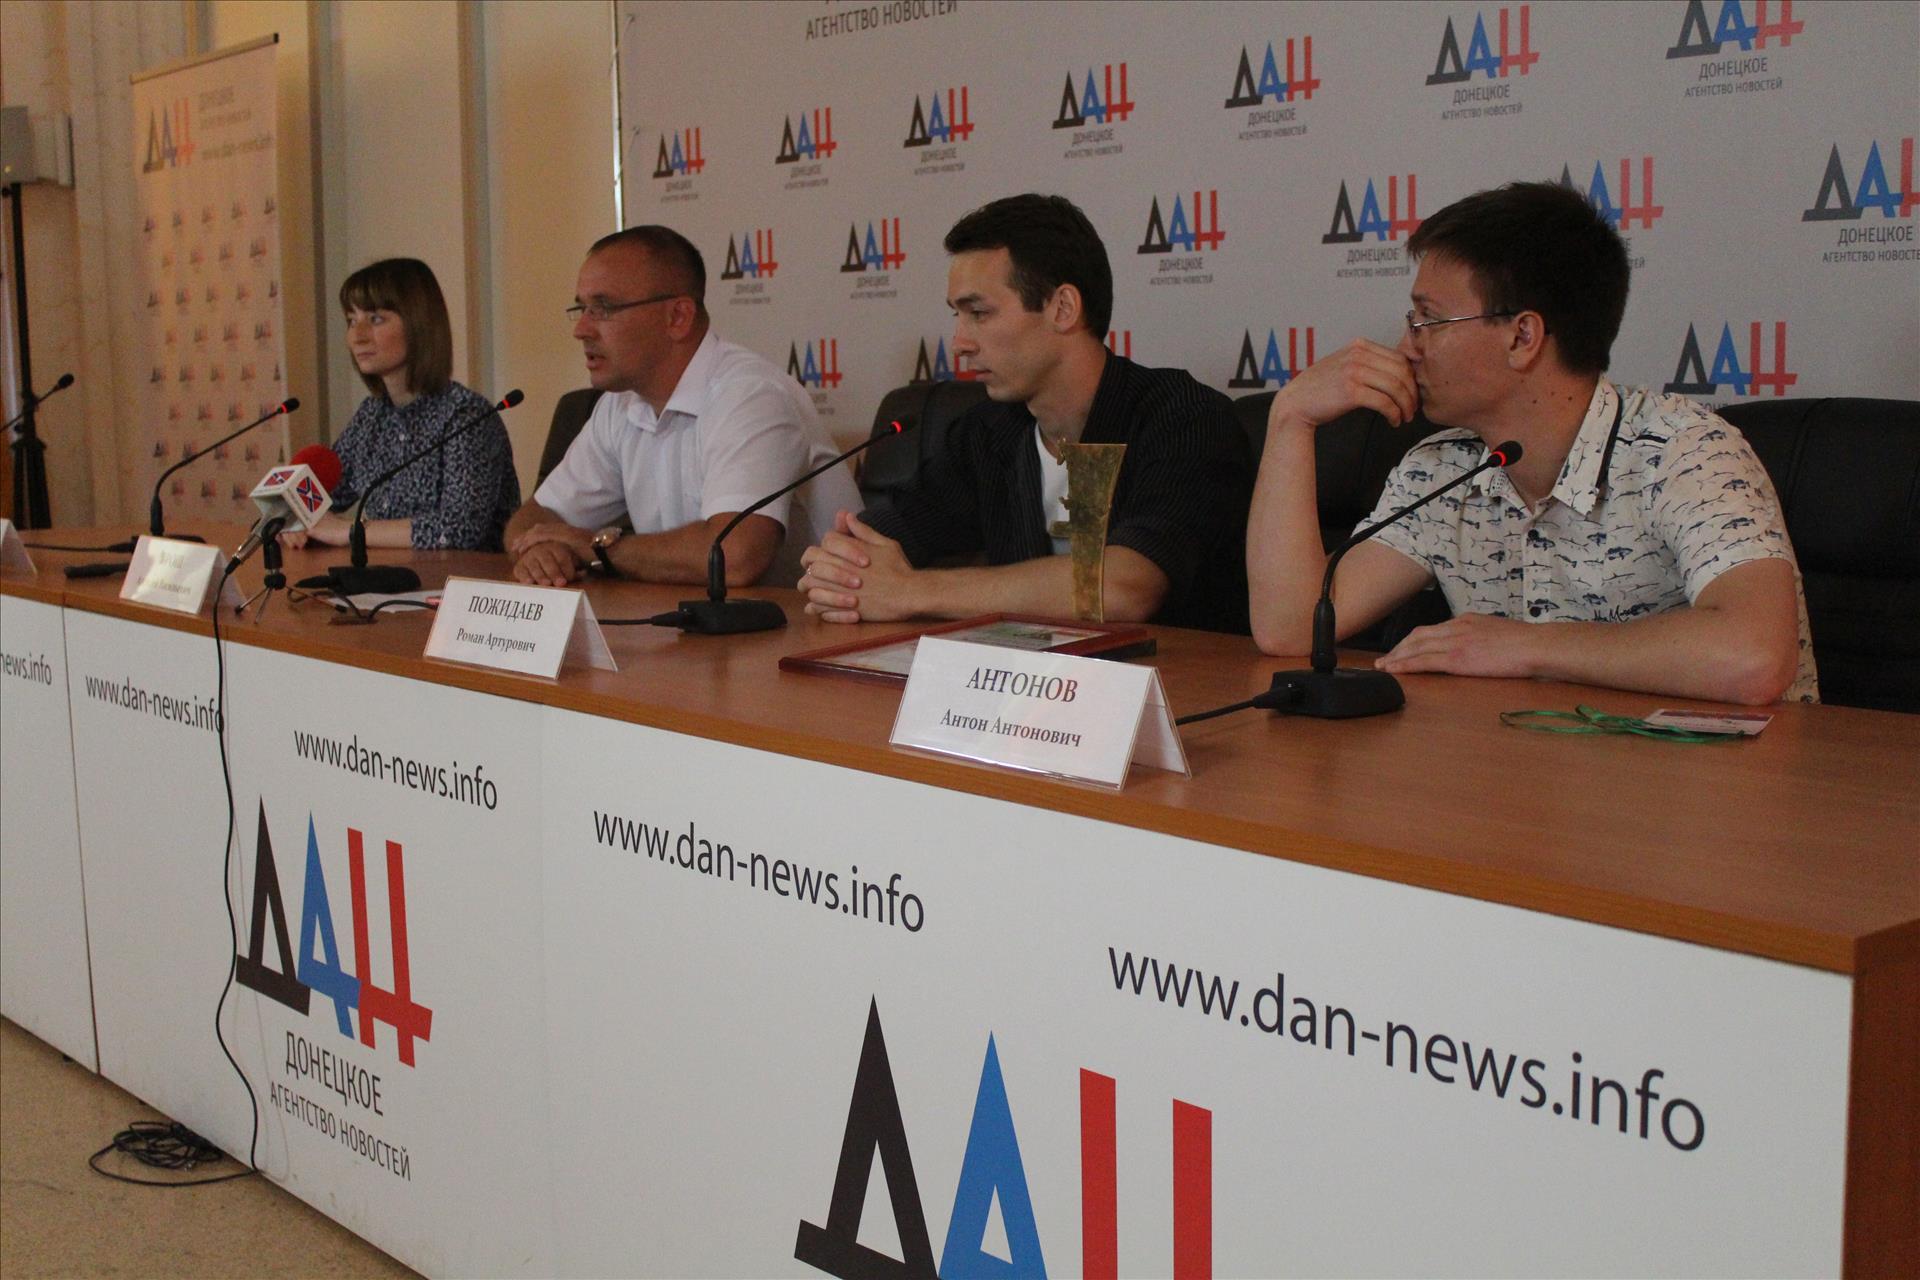 Пресс-конференция по итогу участия Донецкого студенческого театра "Балаган" в I Международном фестивале сценического искусства.